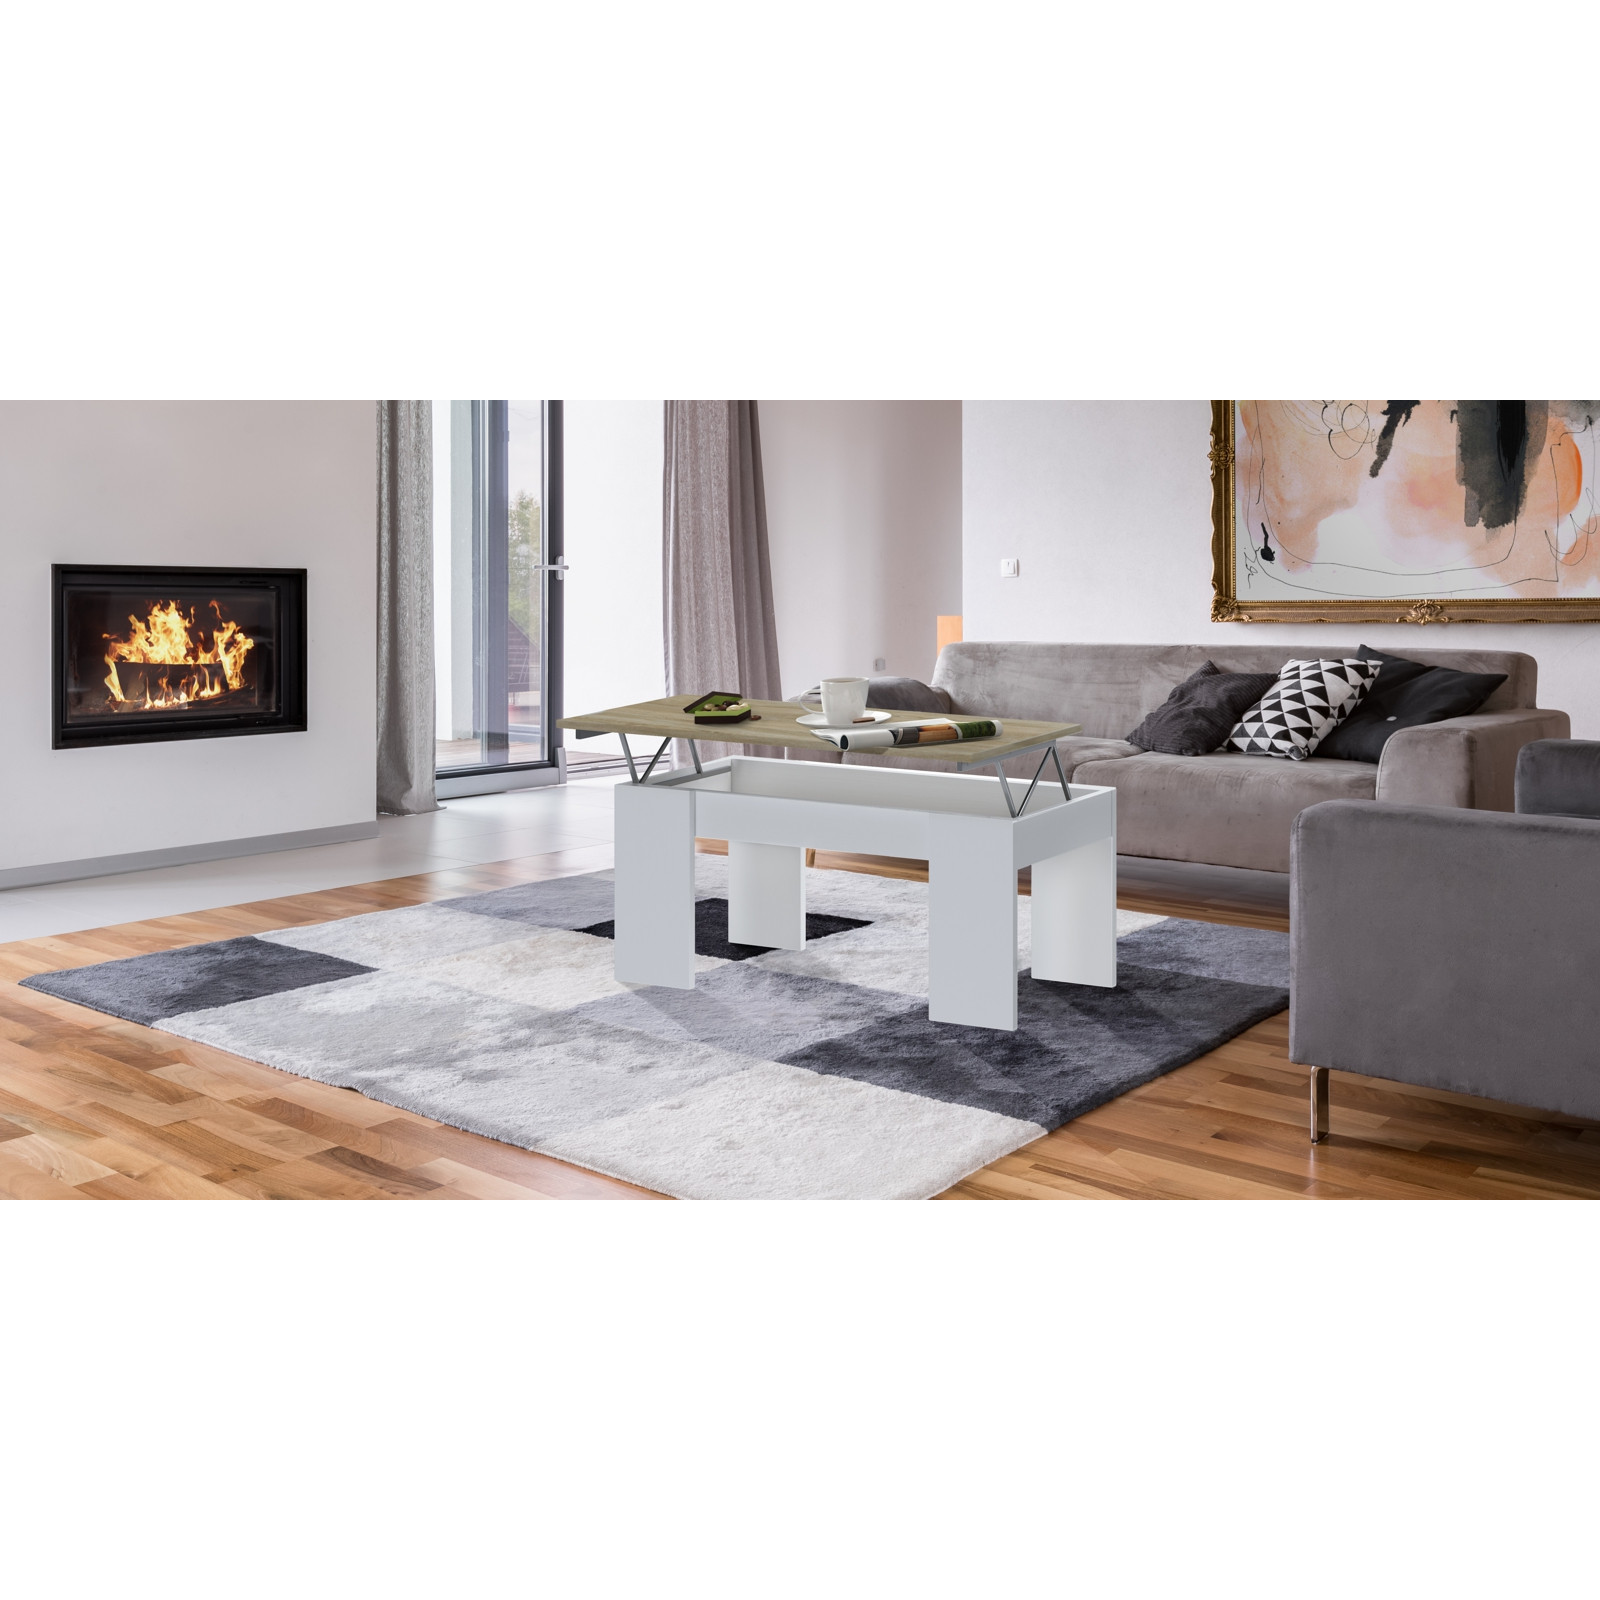 Tavolino Contenitore Dresda Wood finitura Larice Bianco e Rovere, 110x50xh44.6 cm